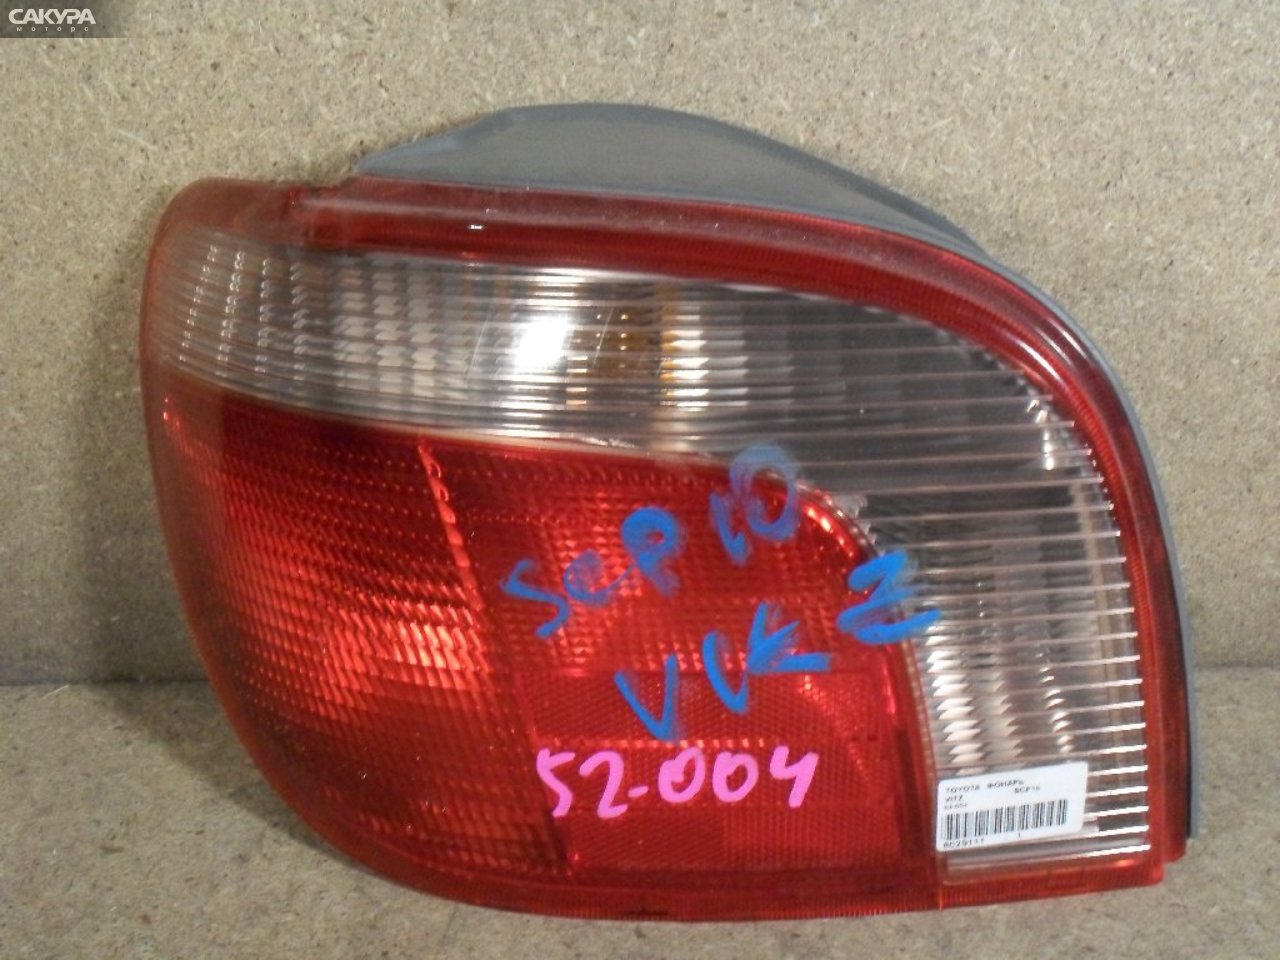 Фонарь стоп-сигнала левый Toyota Vitz SCP10 52-004: купить в Сакура Абакан.